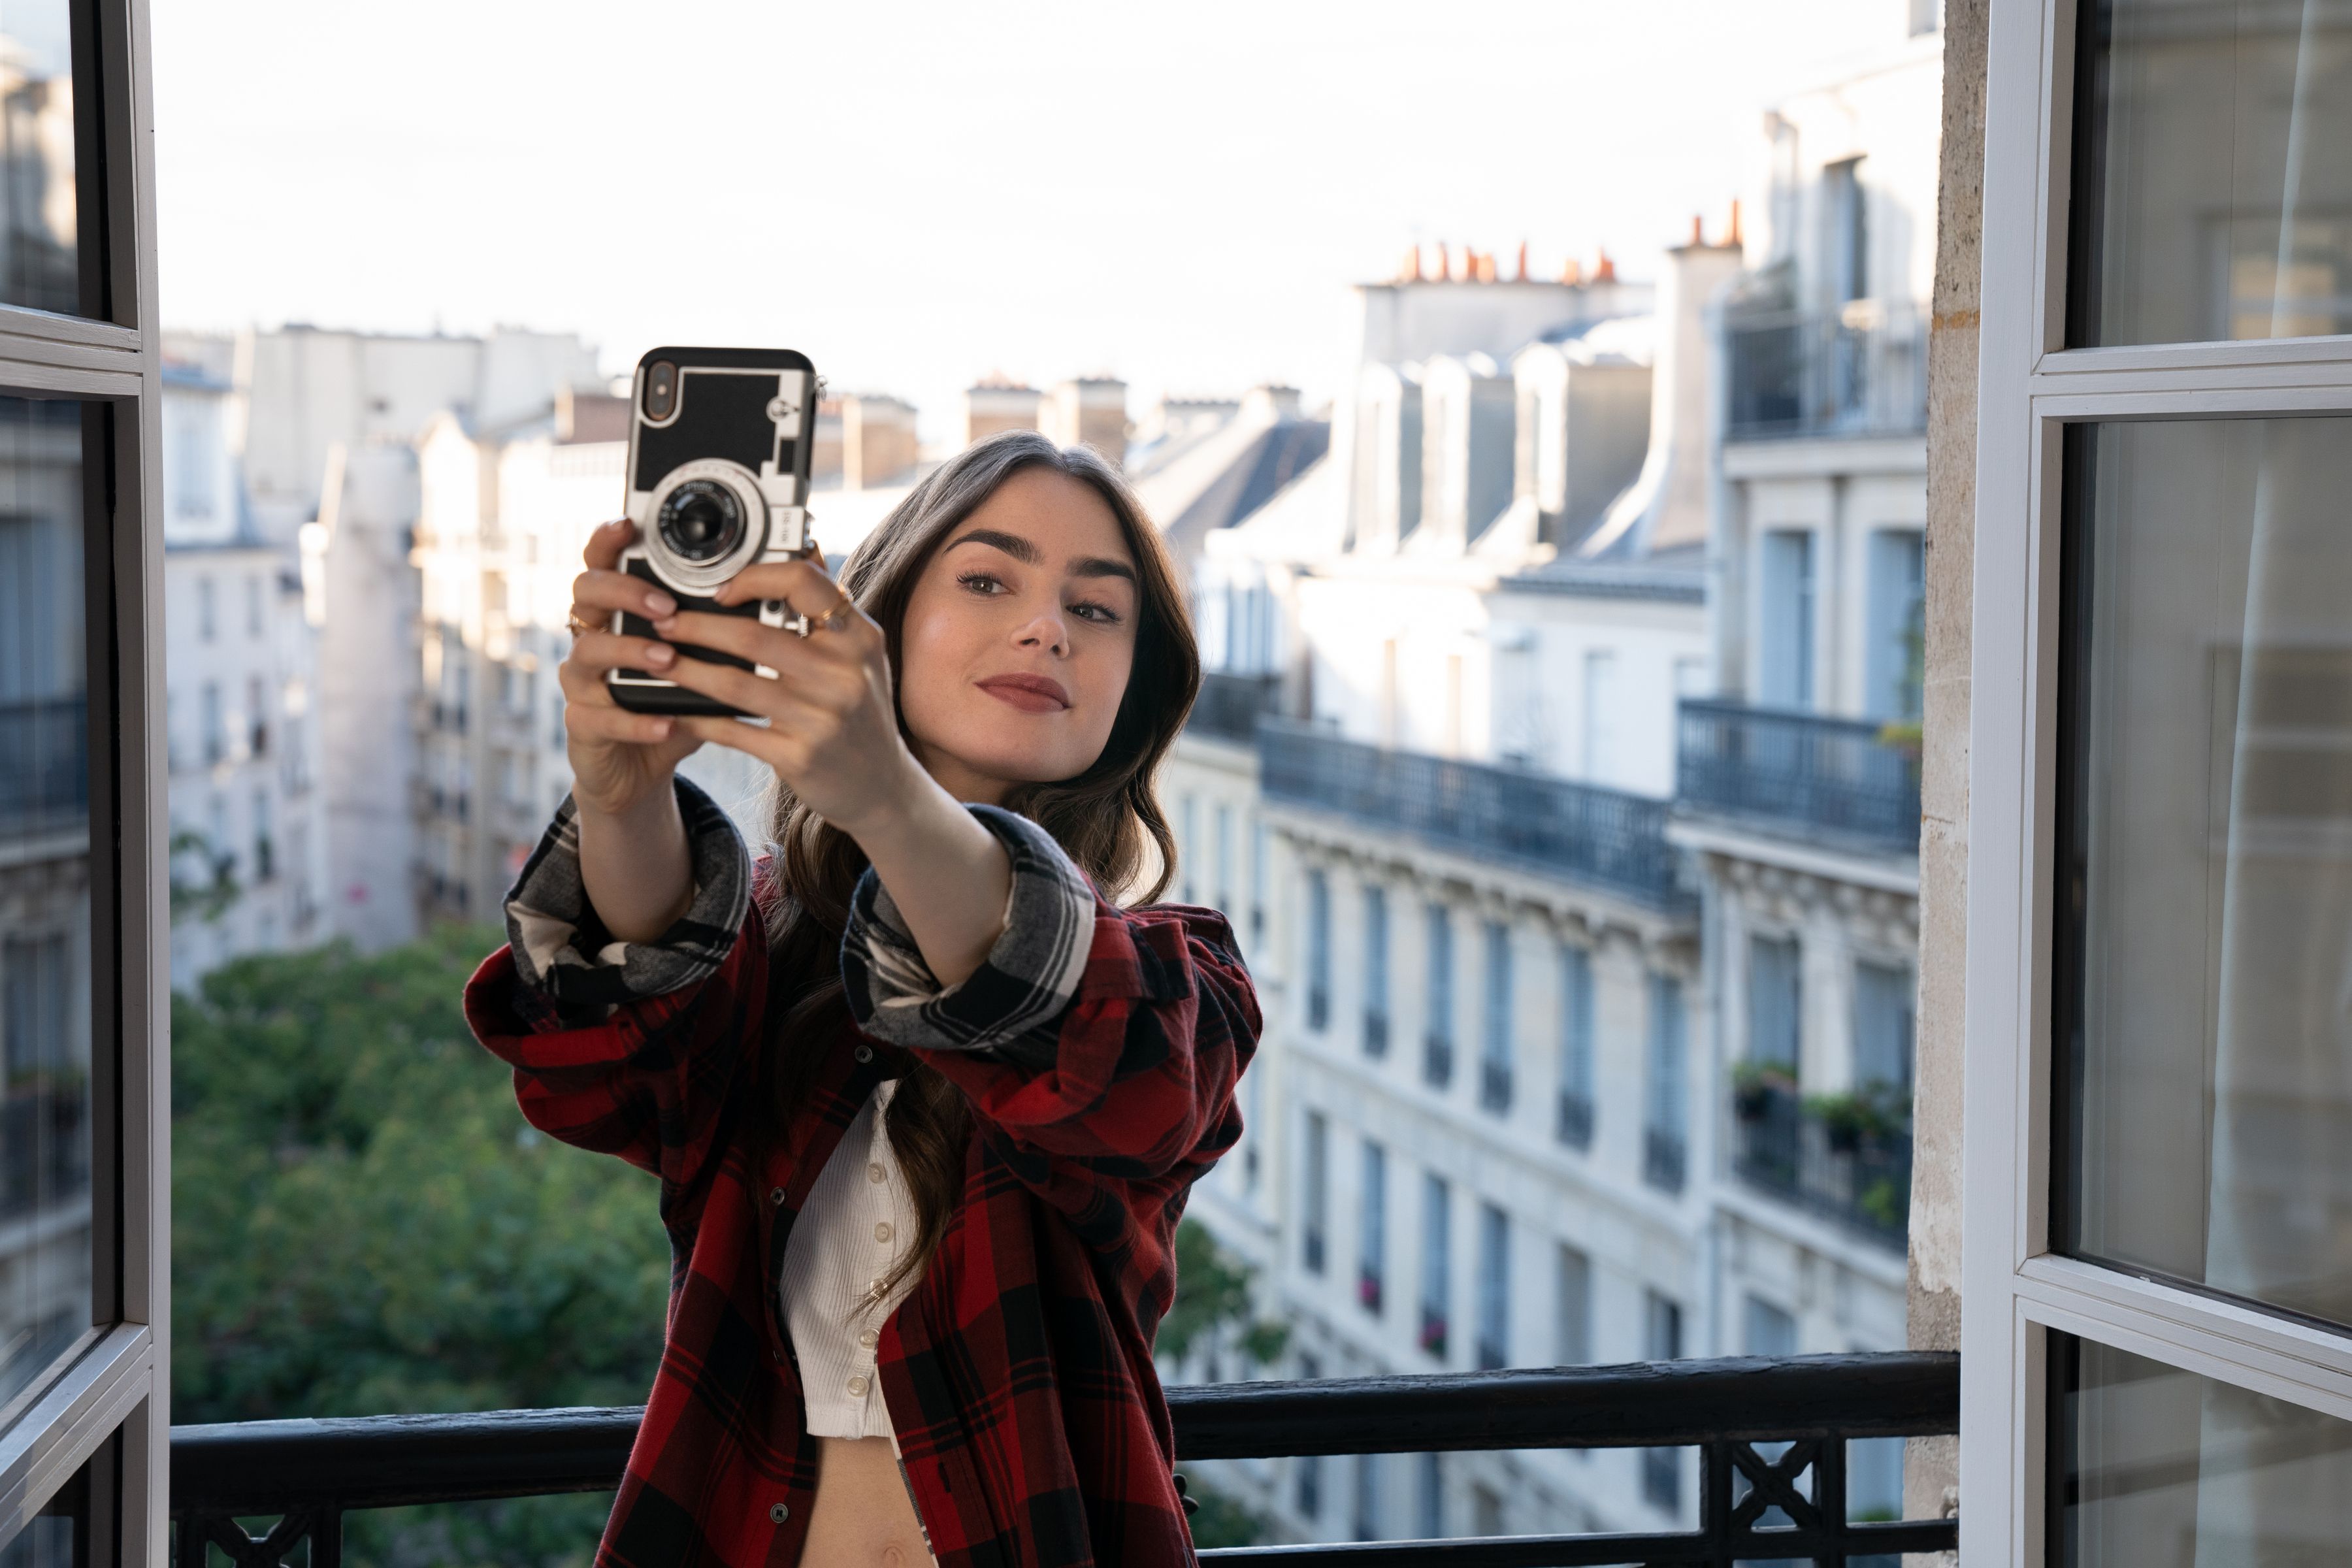 Emily in Paris' Season 2: News, Premiere Date, Cast, Spoilers, Episodes